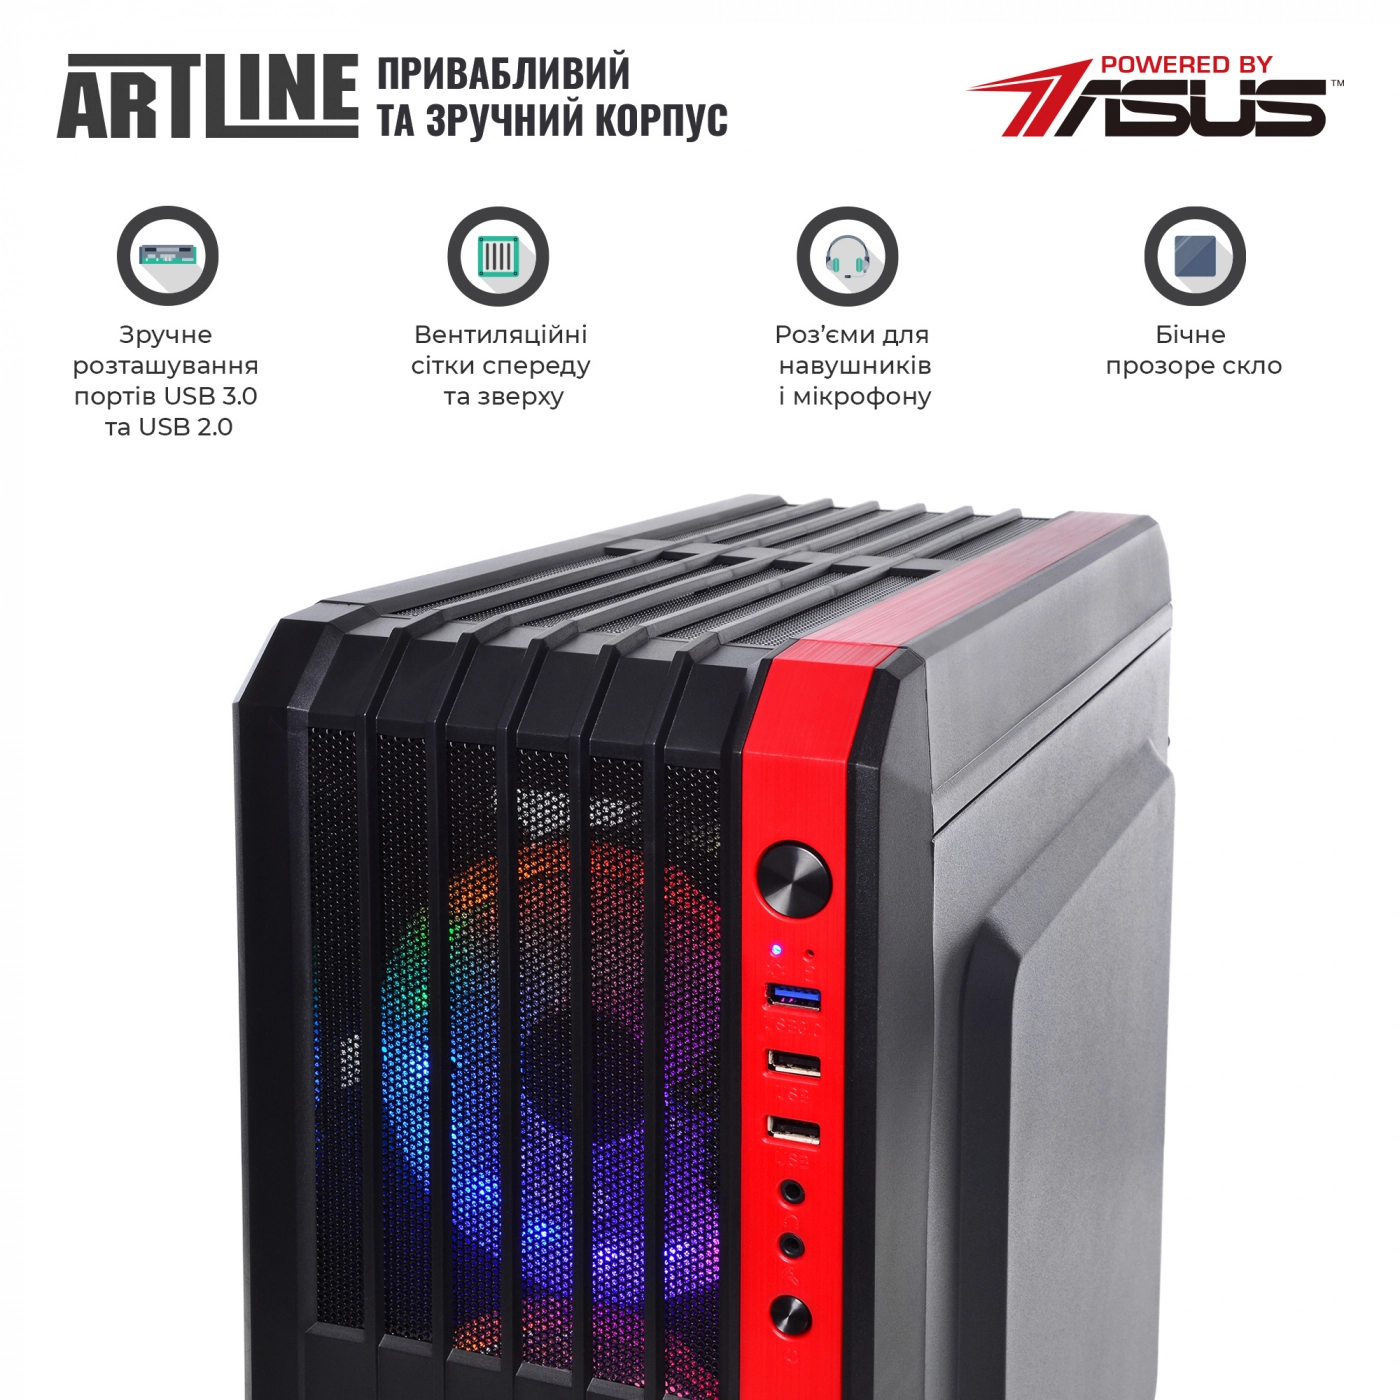 Купить Компьютер ARTLINE Gaming X37v37 - фото 5